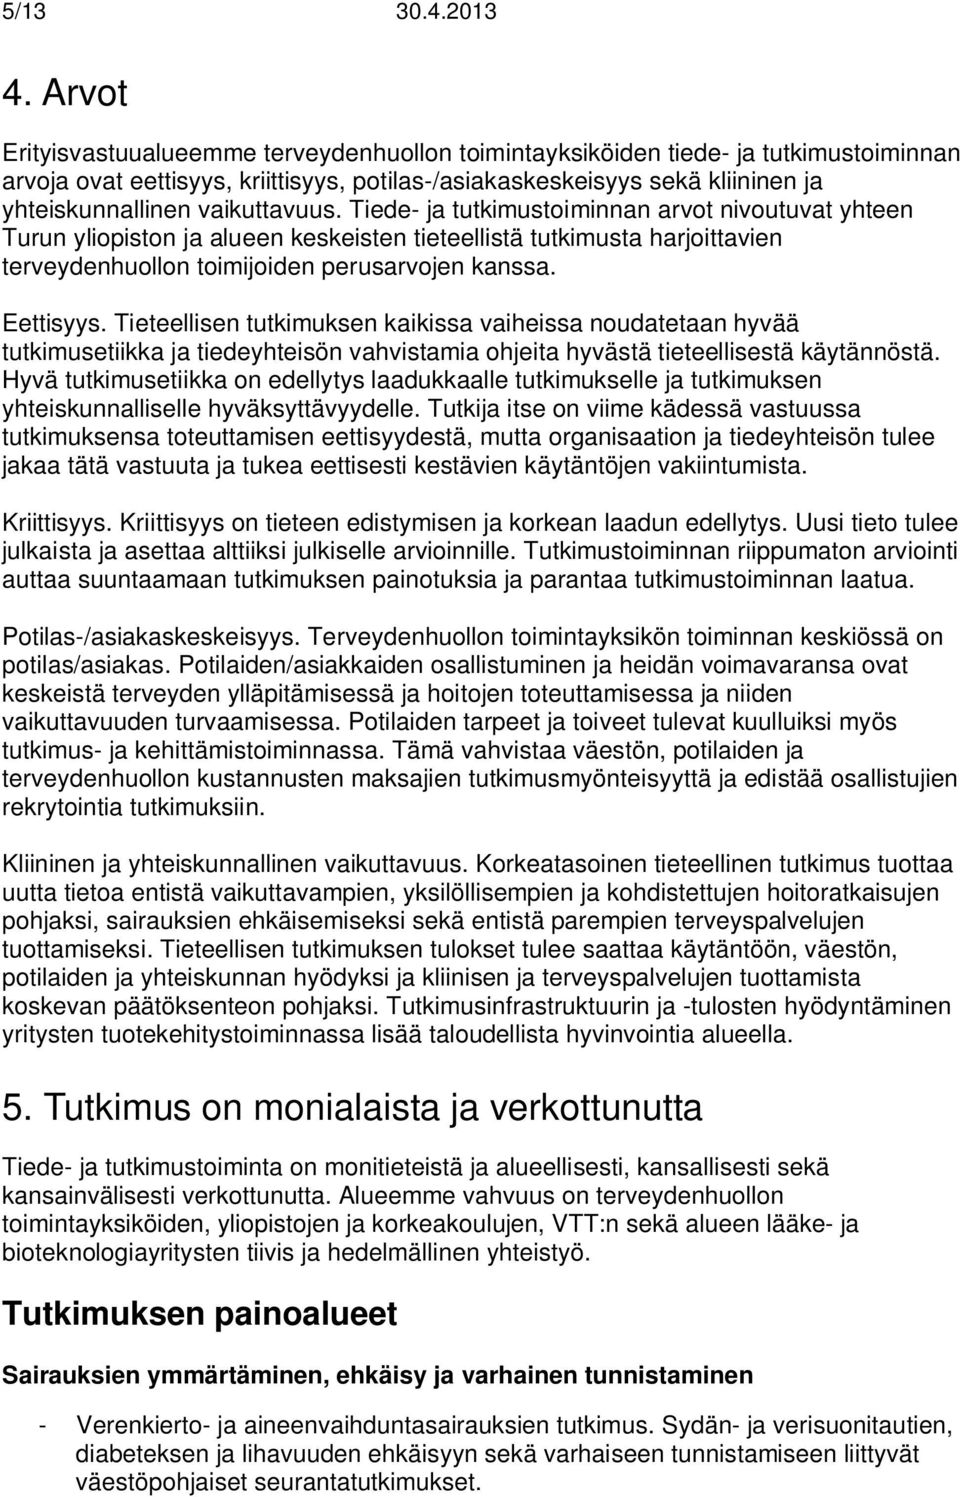 vaikuttavuus. Tiede- ja tutkimustoiminnan arvot nivoutuvat yhteen Turun yliopiston ja alueen keskeisten tieteellistä tutkimusta harjoittavien terveydenhuollon toimijoiden perusarvojen kanssa.